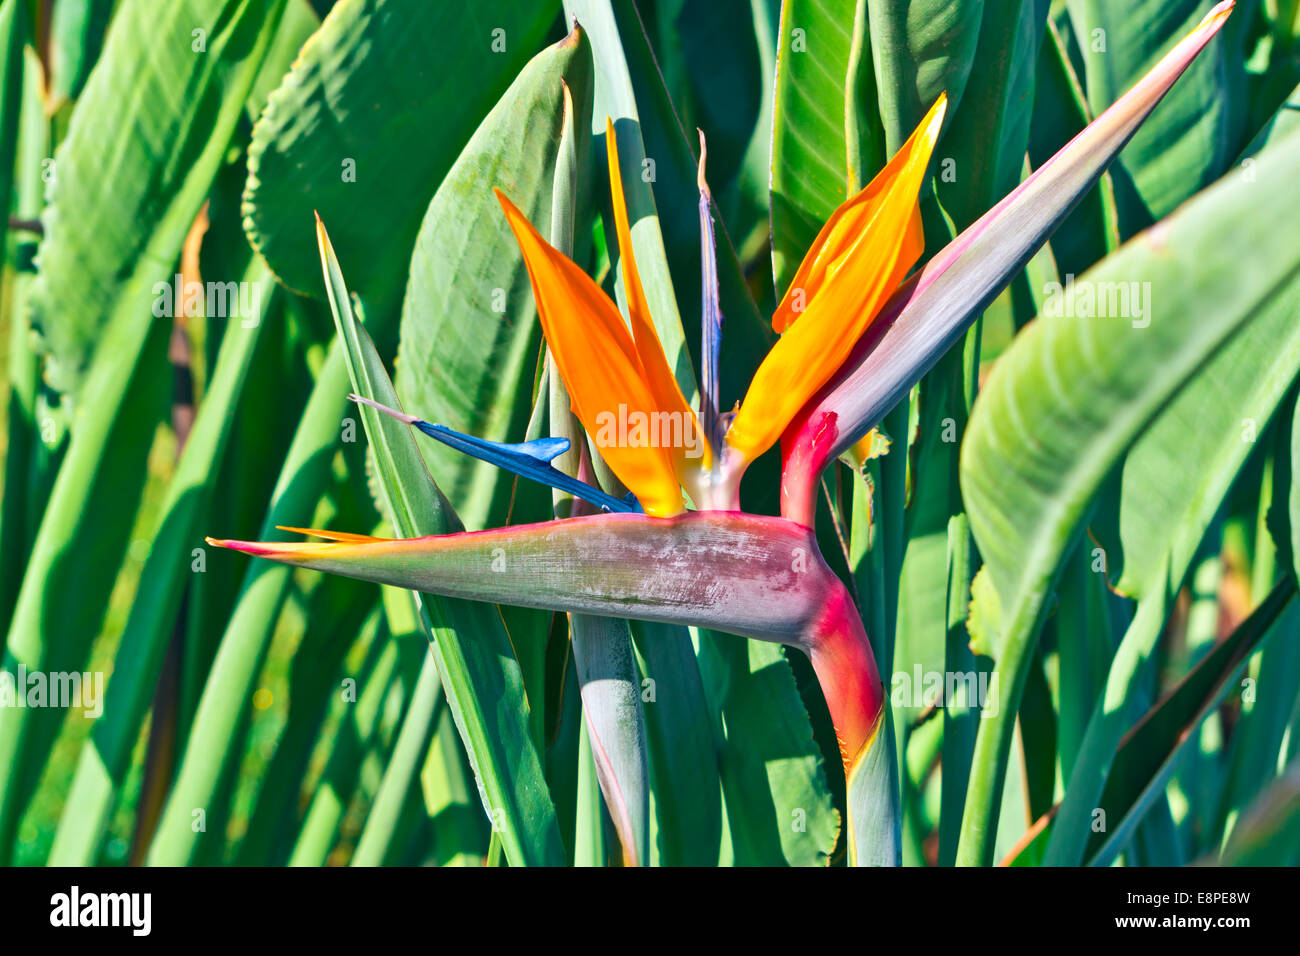 Oiseau de paradis Strelizia fleur dans un jardin. Banque D'Images